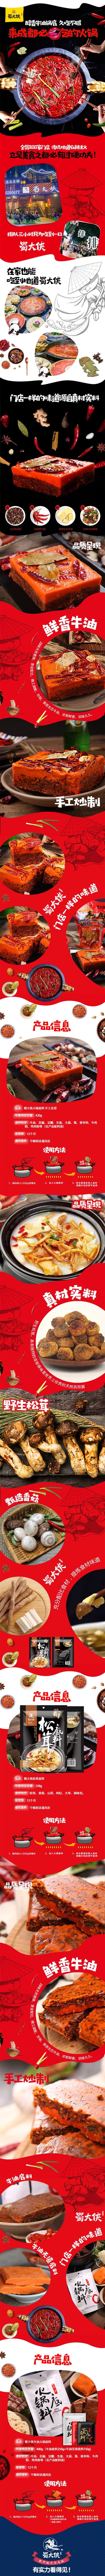 SHUDAXAI Chongqing hotpot seasoning set 3packages